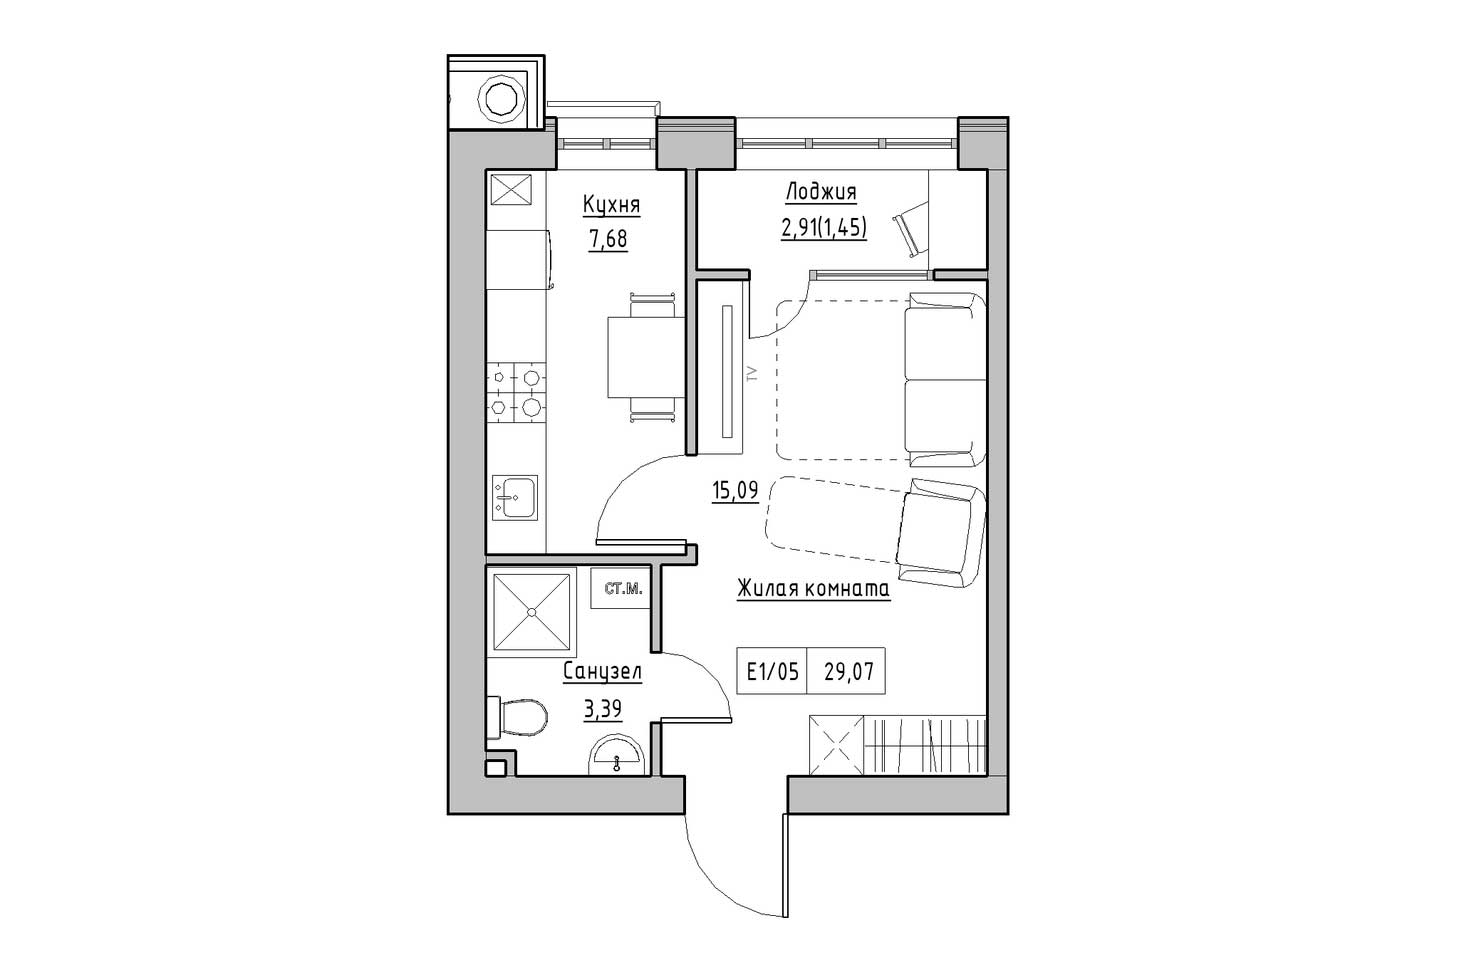 Планировка 1-к квартира площей 29.07м2, KS-009-01/0007.